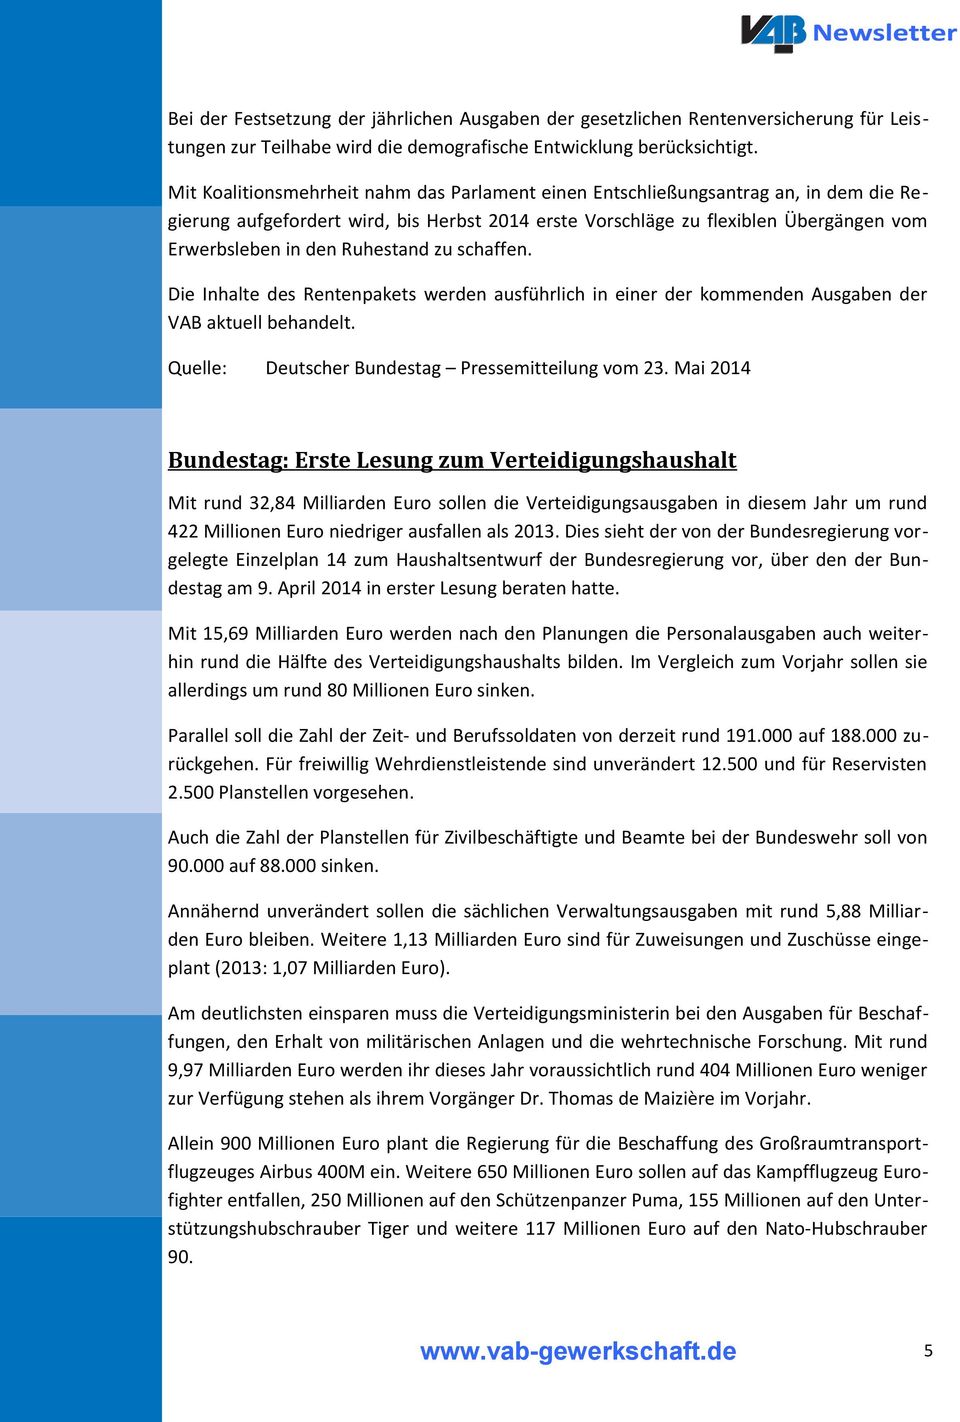 Ruhestand zu schaffen. Die Inhalte des Rentenpakets werden ausführlich in einer der kommenden Ausgaben der VAB aktuell behandelt. Quelle: Deutscher Bundestag Pressemitteilung vom 23.